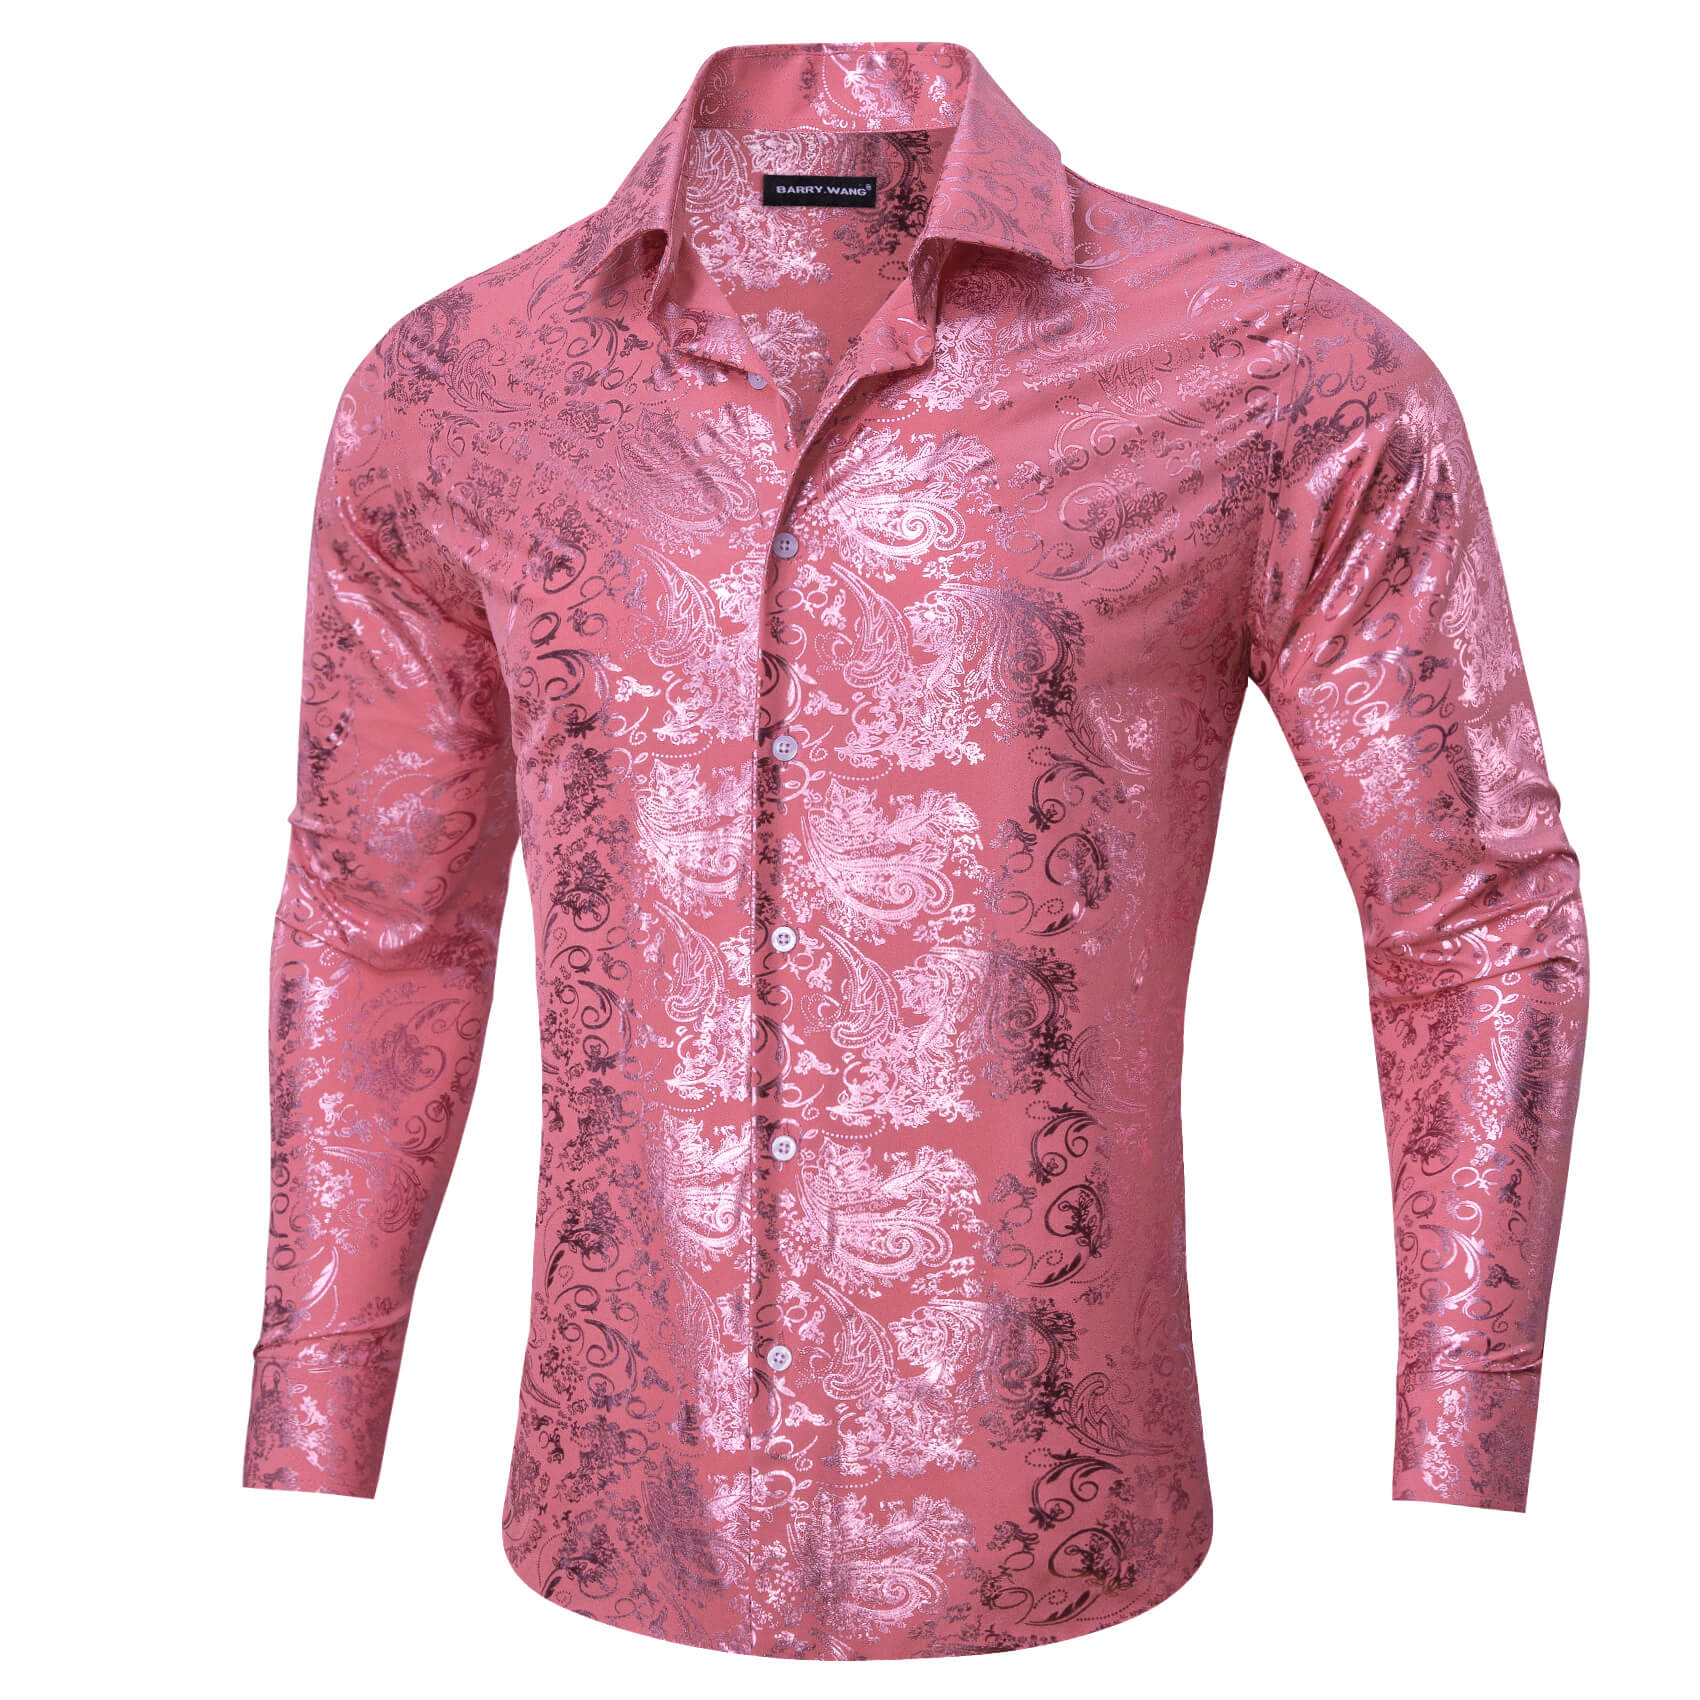 Barry.wang Men's Bronzing Shirt Watermelon Pink Floral Silk Shirt